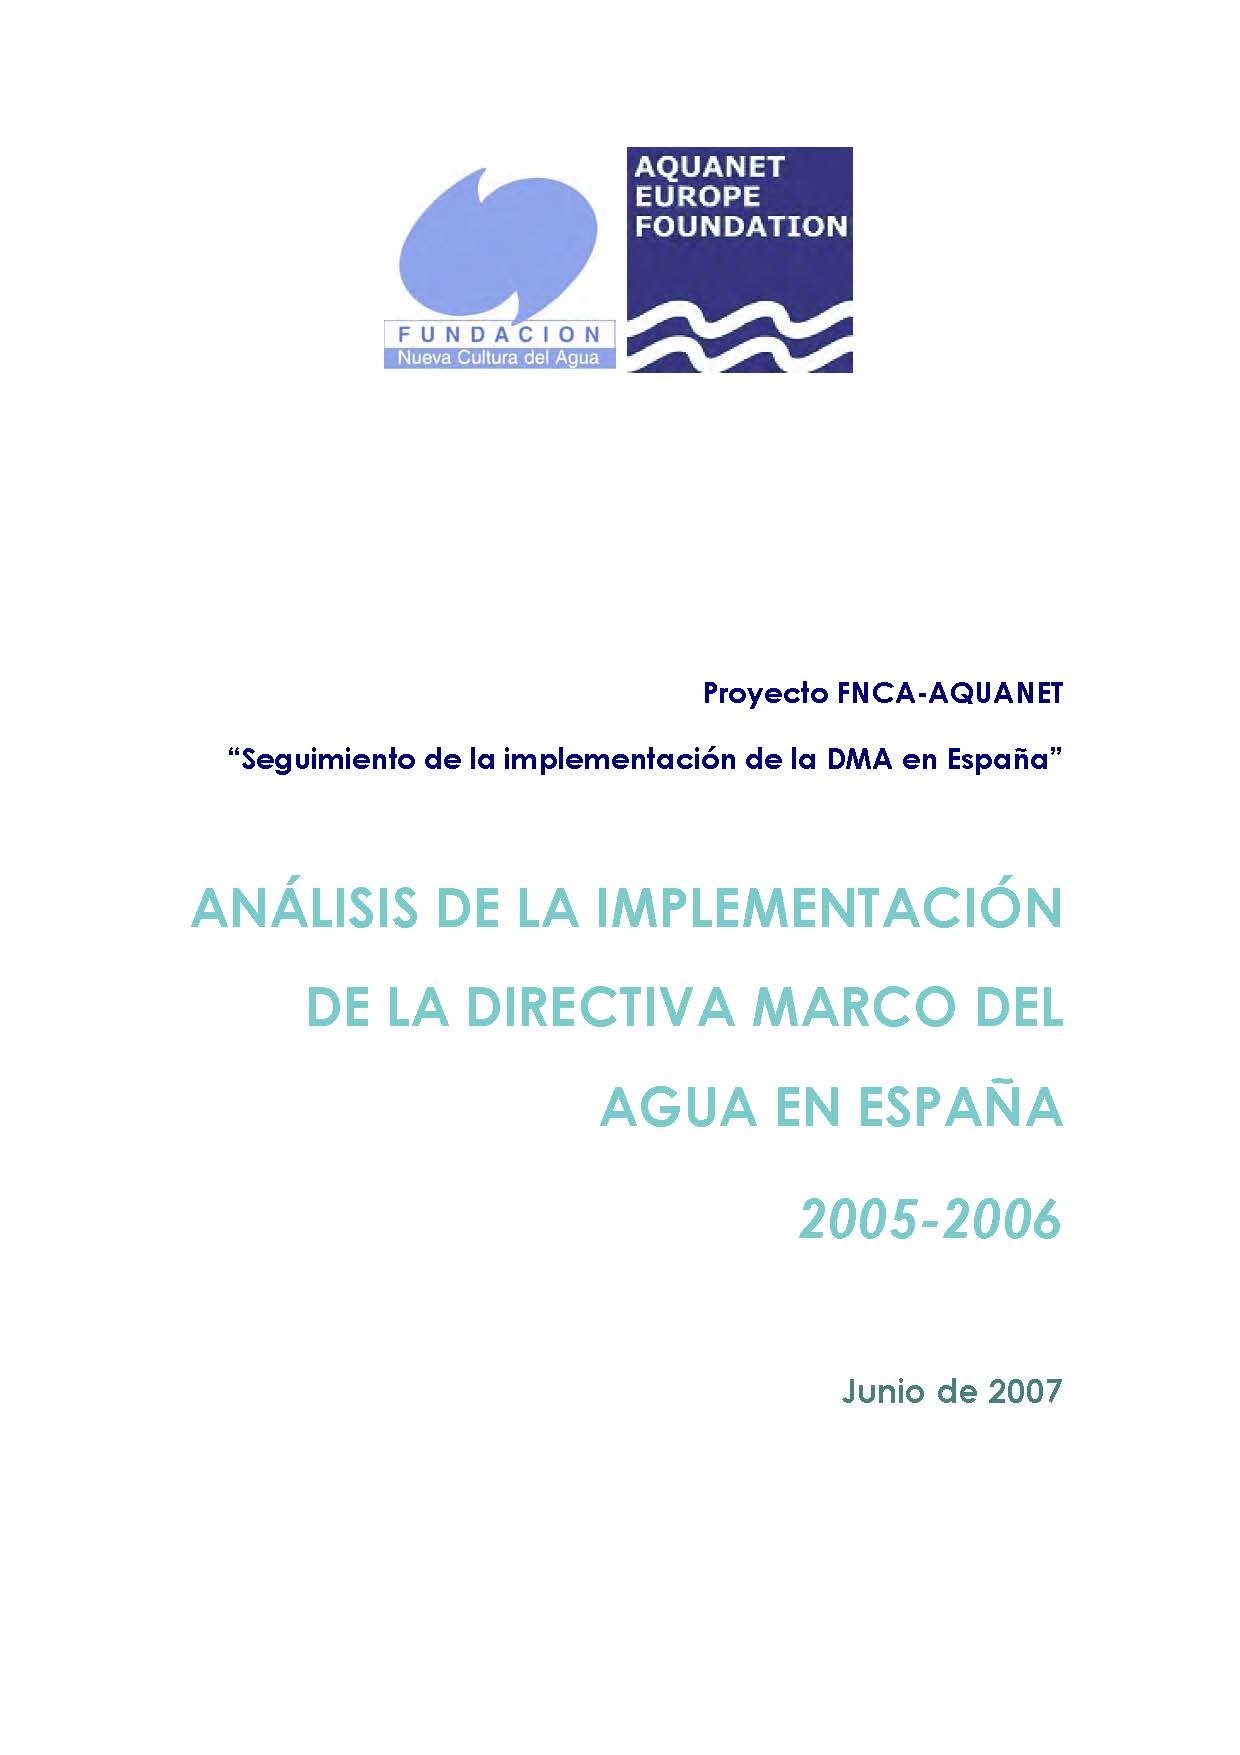 ANÁLISIS DE LA IMPLEMENTACIÓN DE LA DIRECTIVA MARCO DEL AGUA EN ESPAÑA 2005-2006